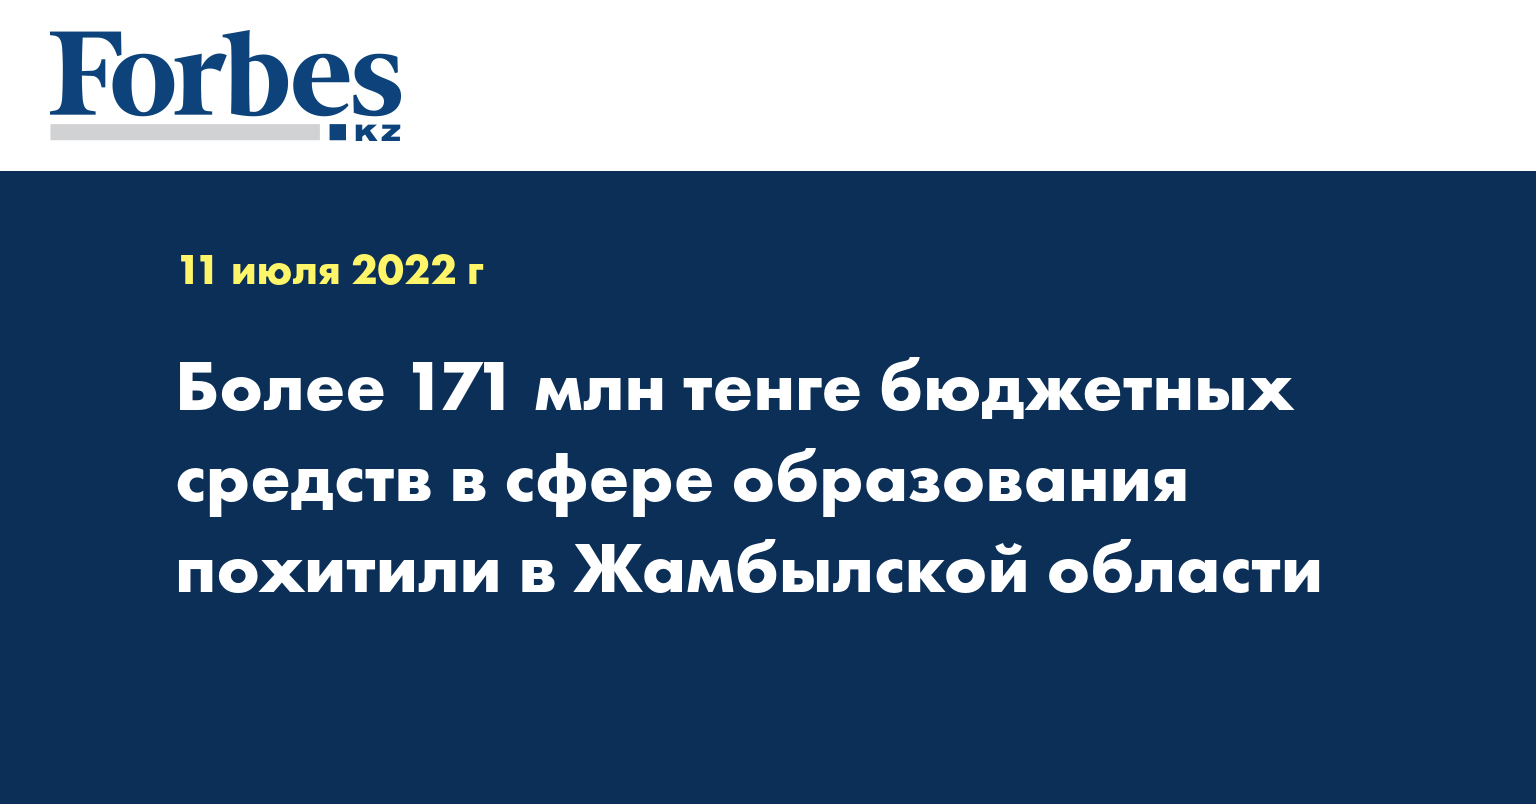 Более 171 млн тенге бюджетных средств в сфере образования похитили в Жамбылской области